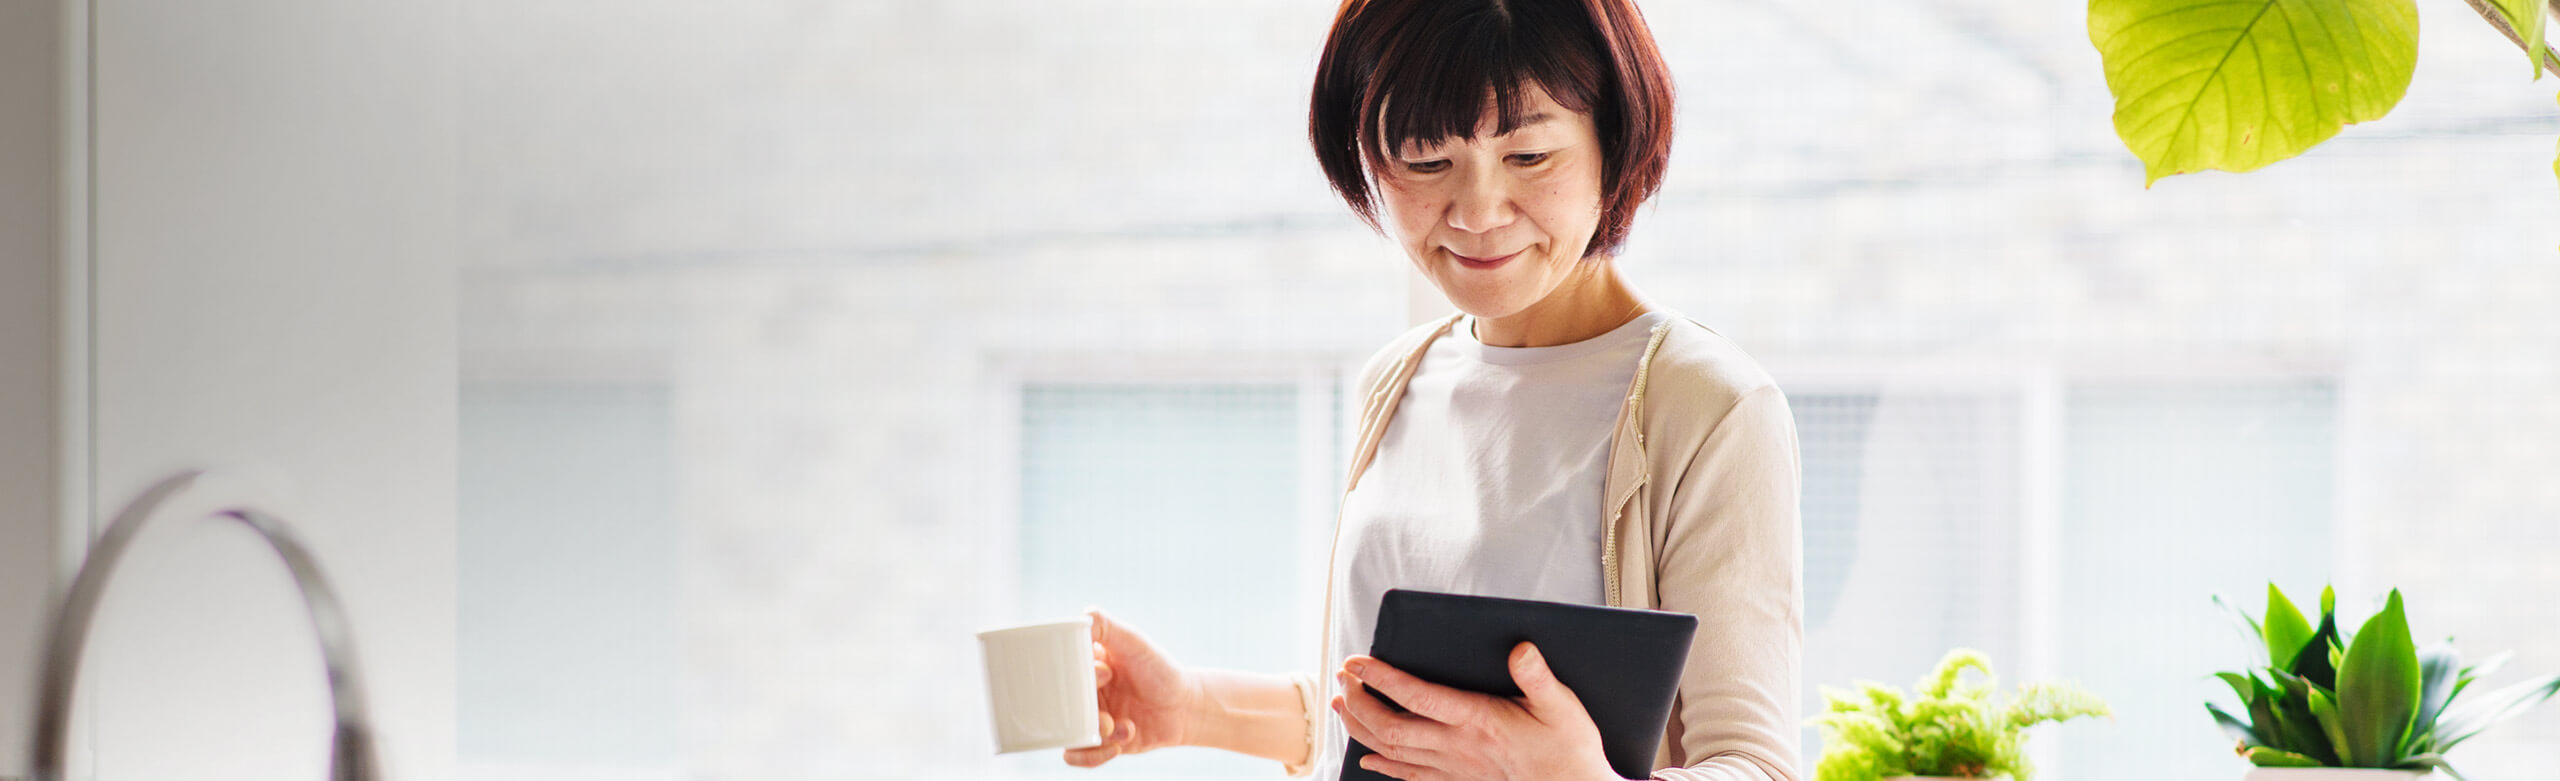 Imagen de una mujer con una taza de café y usando la tableta.